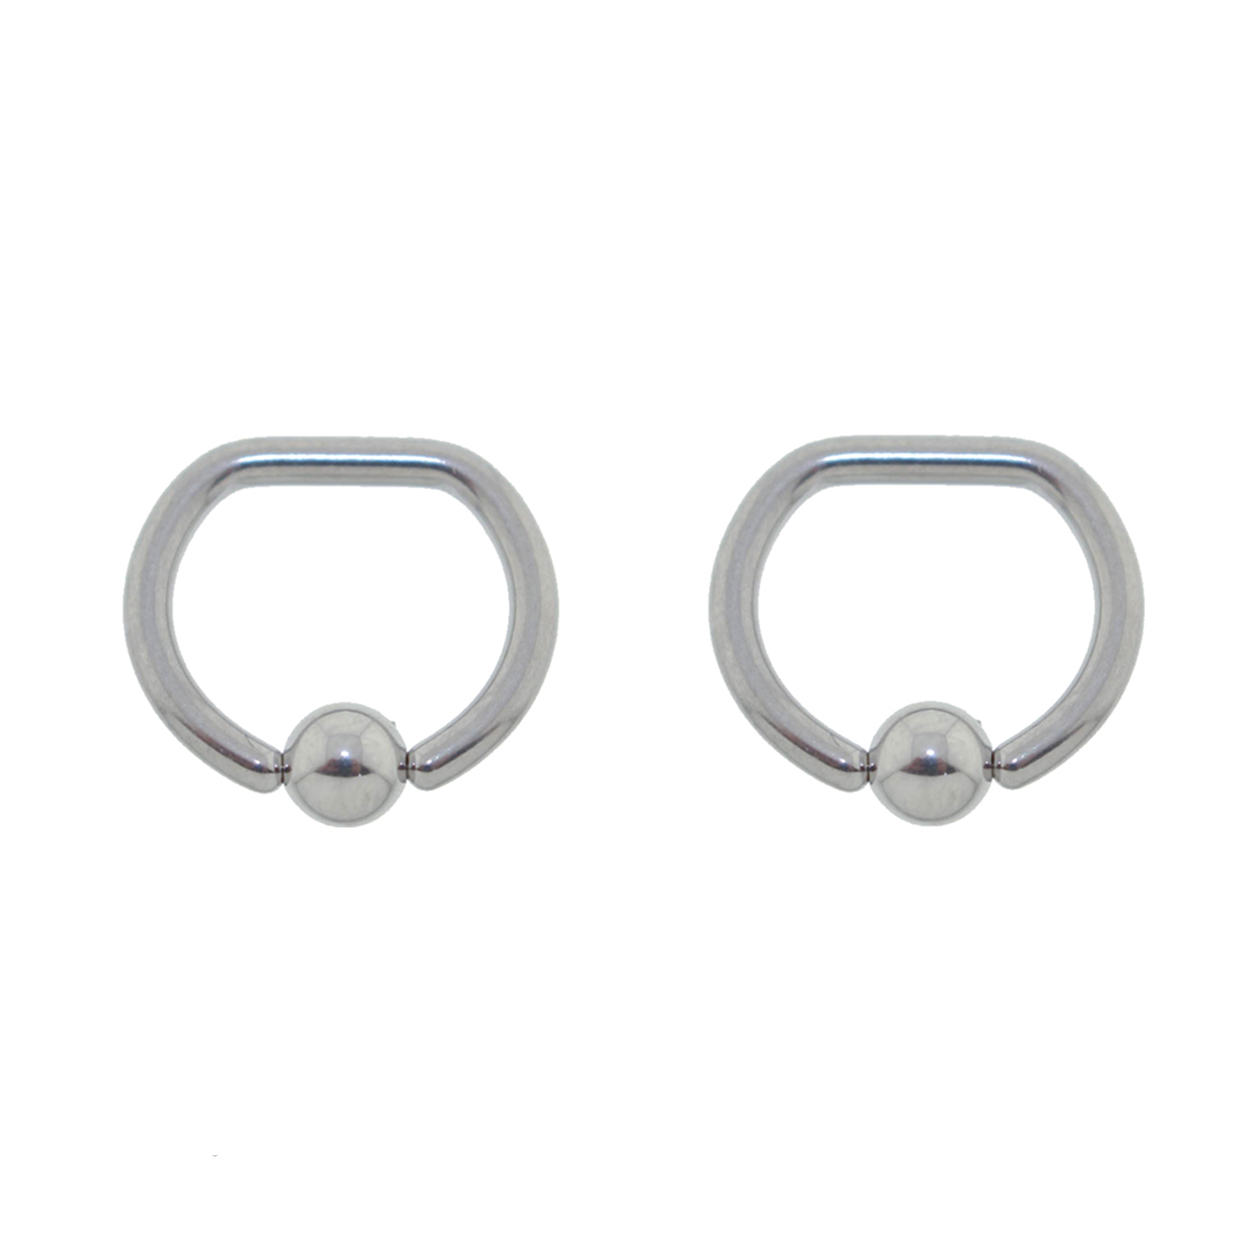 Pair of Steel Captive Bead D-Ring CBR Earrings 16 or 14 Gauge | eBay